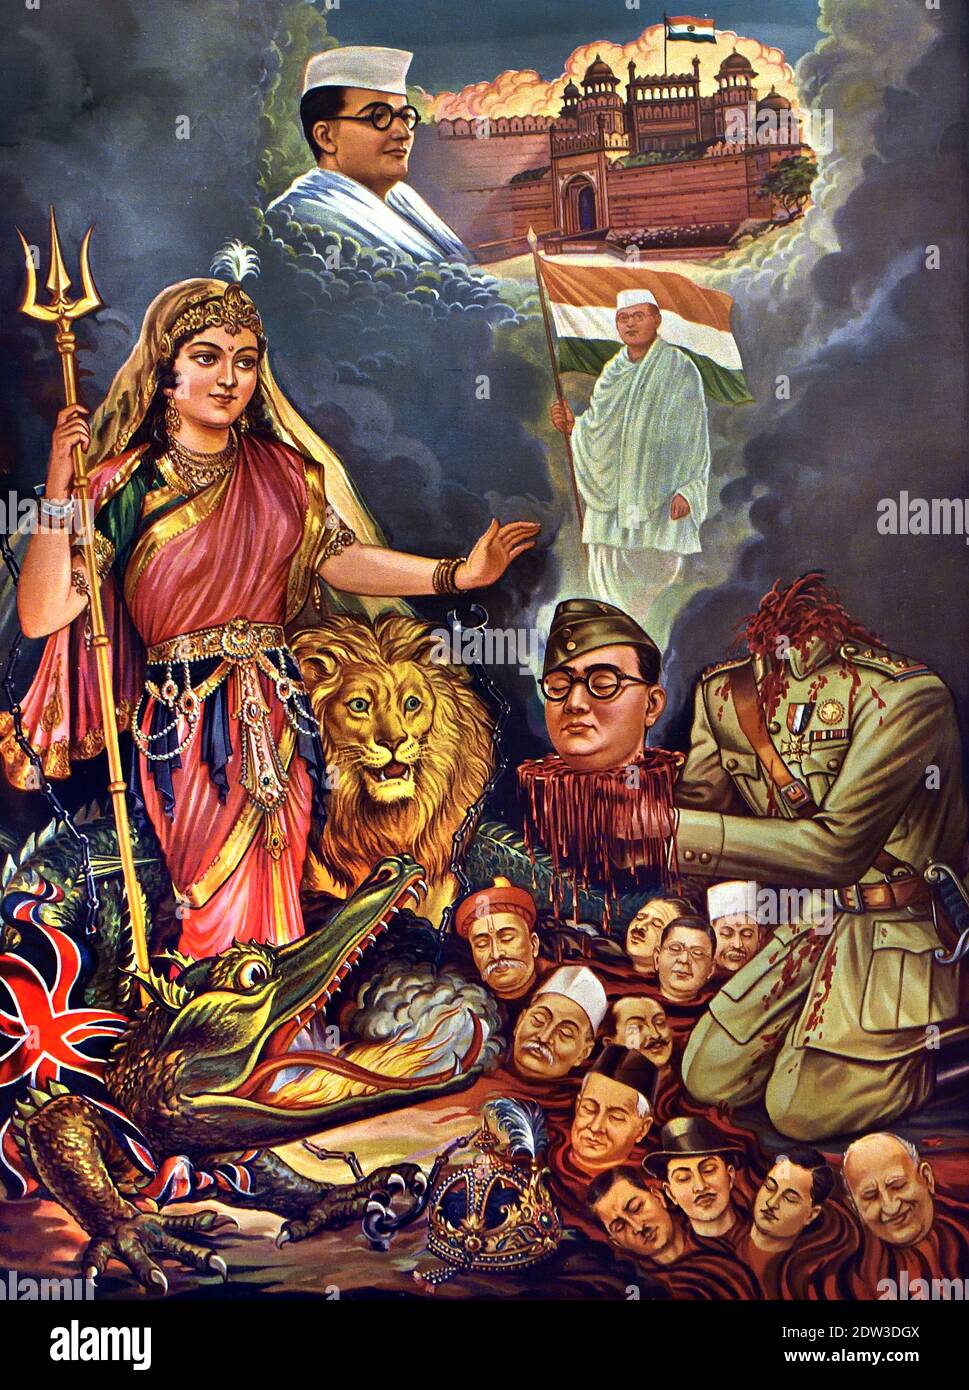 La stampa ritrae i combattenti caduti per la libertà e il sacrificio di Subhash Chandra Bose 1897 - 1945 ( Bose offre la testa a madre India che è personificata come una Dea, India, indiana, ( Subhas Chandra Bose era un combattente indiano per la libertà e una delle cause alla libertà indiana. ) Foto Stock